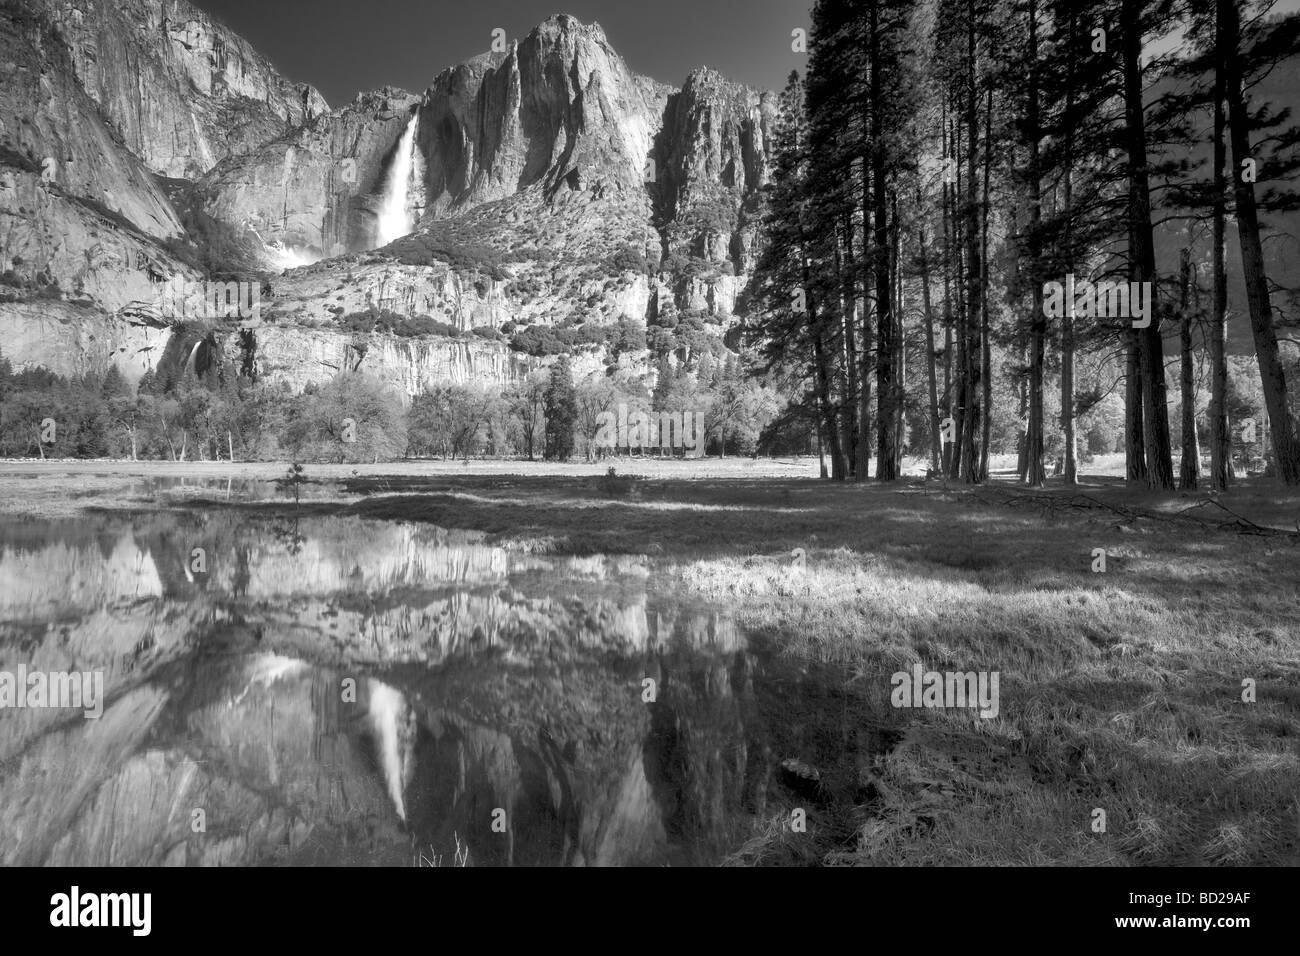 Yosemite Falls reflected in pool of water Yosemite National Park California Stock Photo